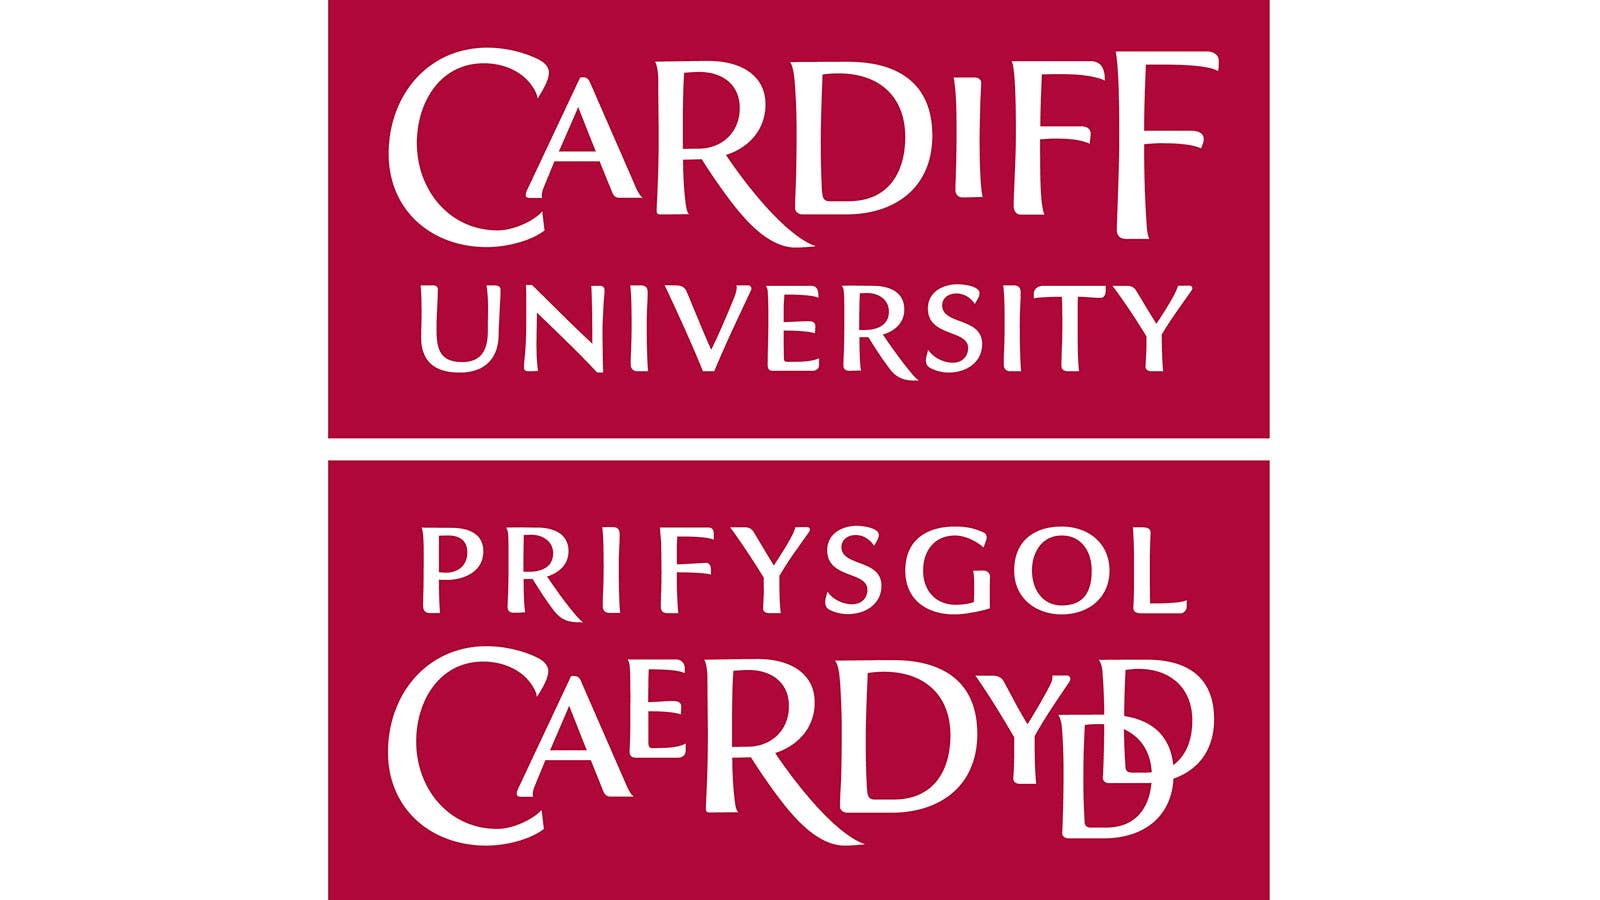 The Cardiff University logo.